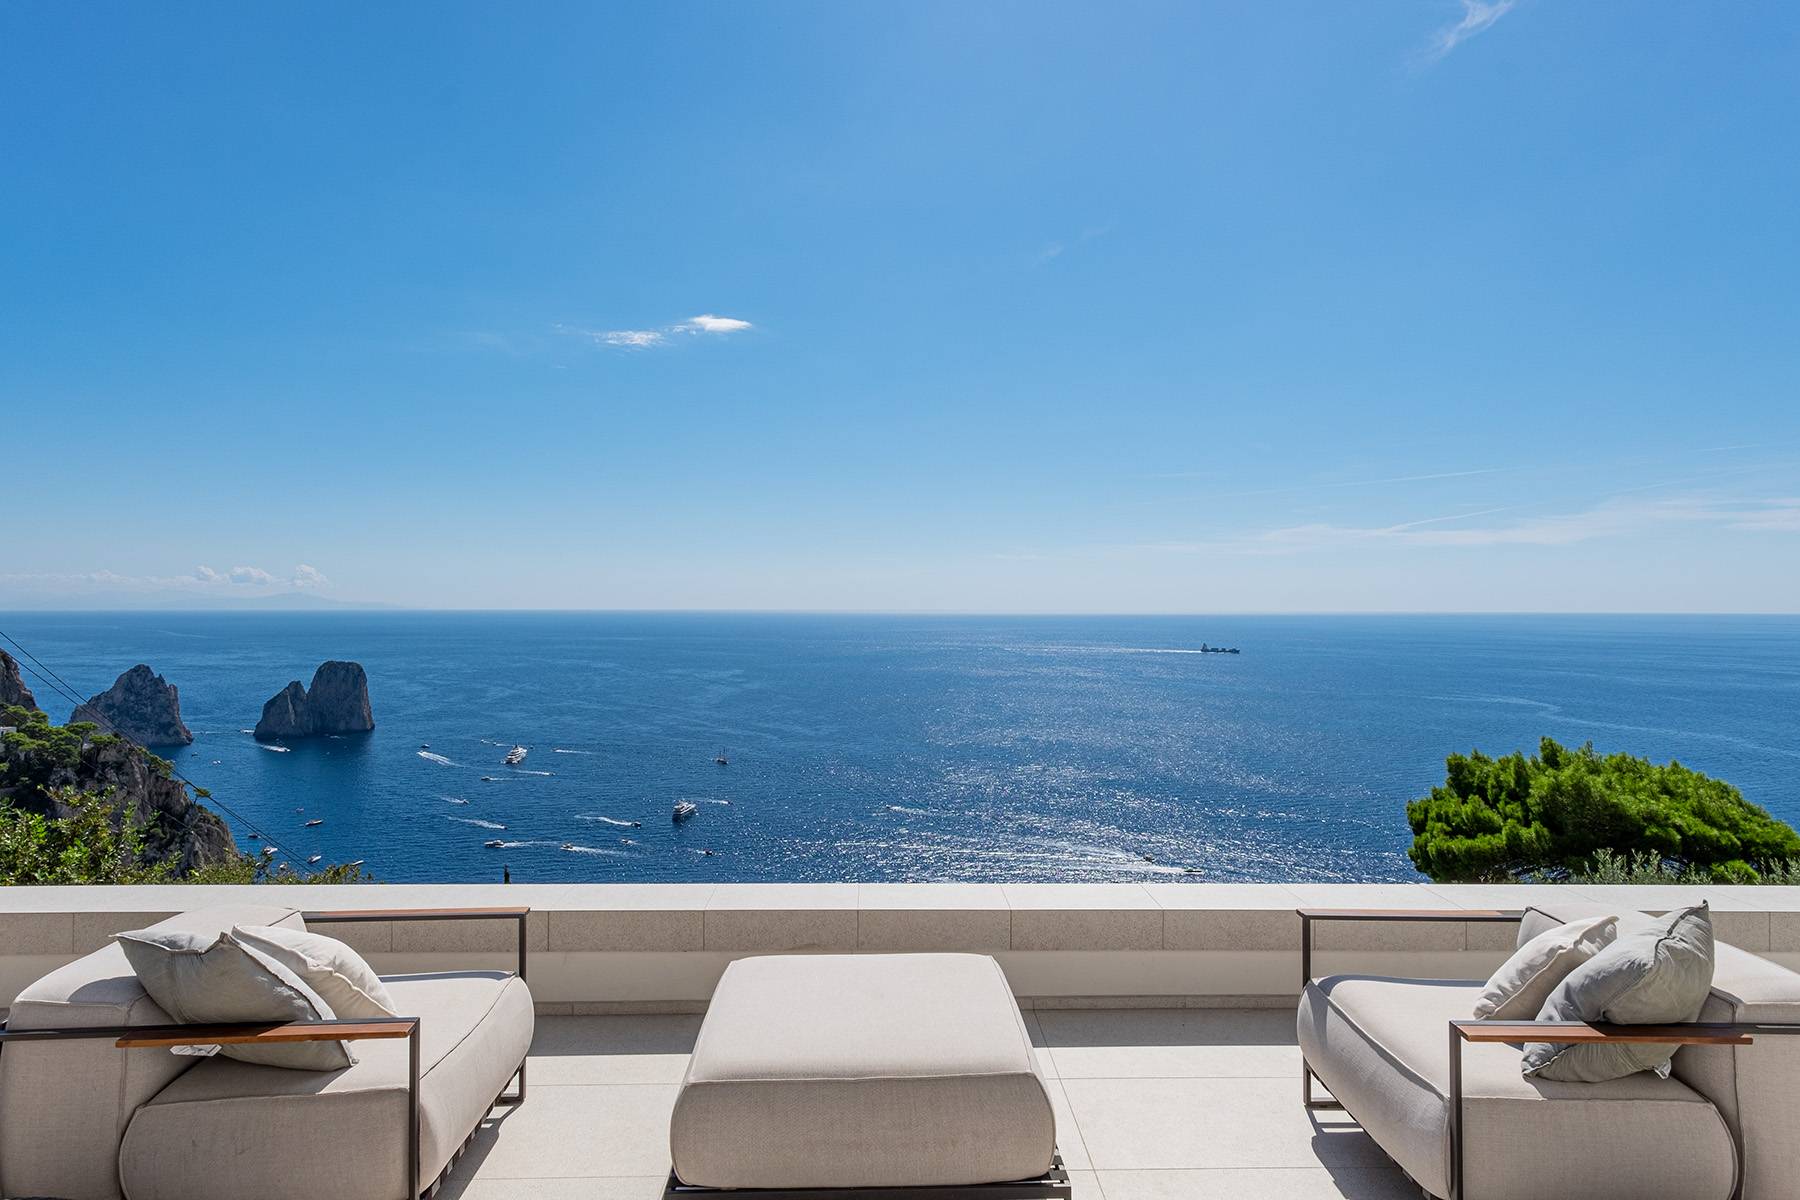 Villa in Vendita a Capri: 4 locali, 120 mq - Foto 1